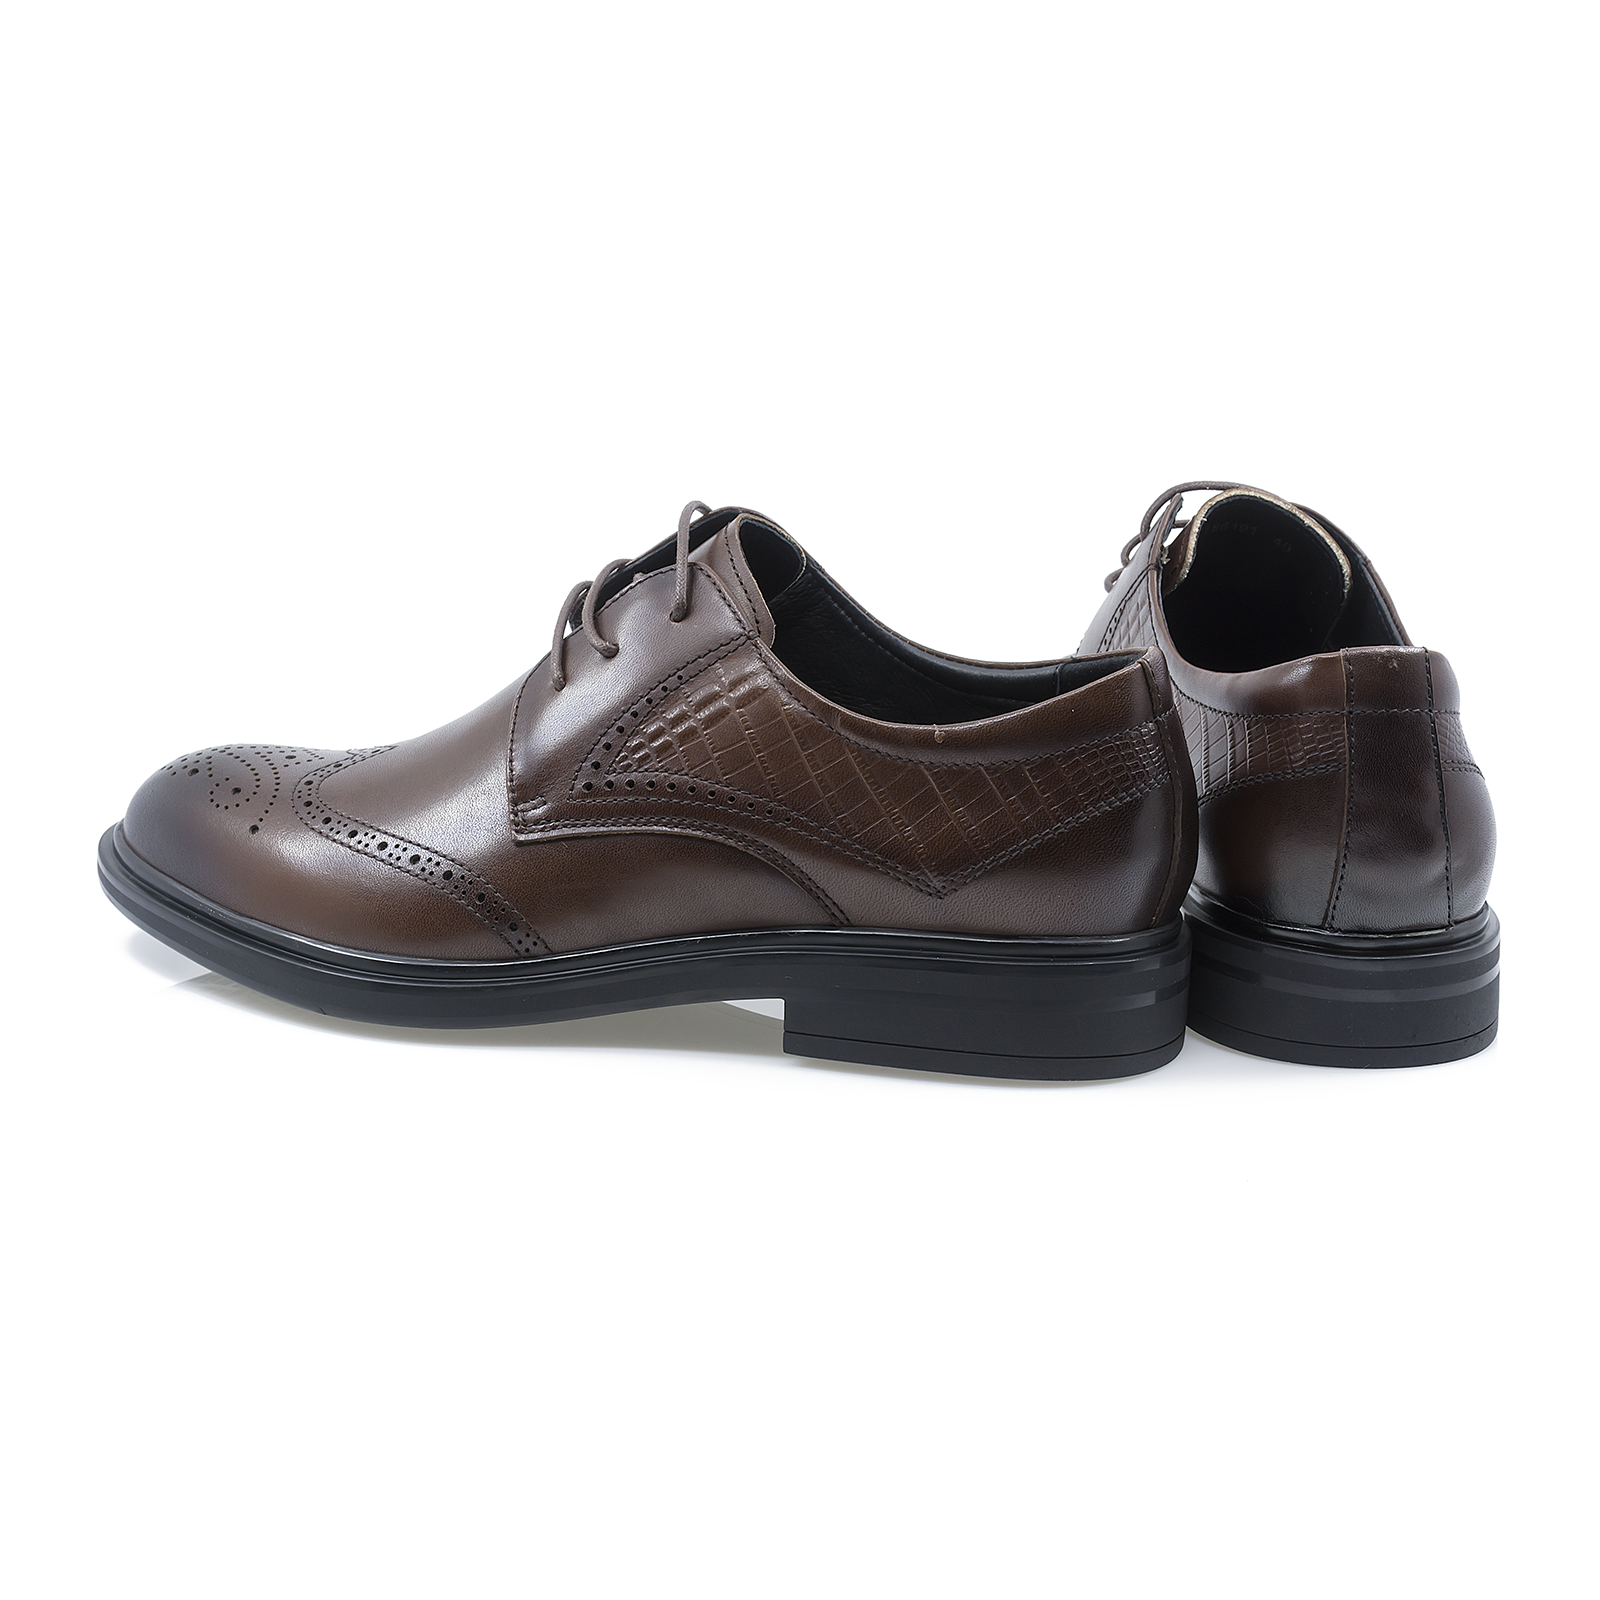 Pantofi-barbati-ELDEMAS-186191-eleganti-piele-naturala-maro-nouamoda.ro-5